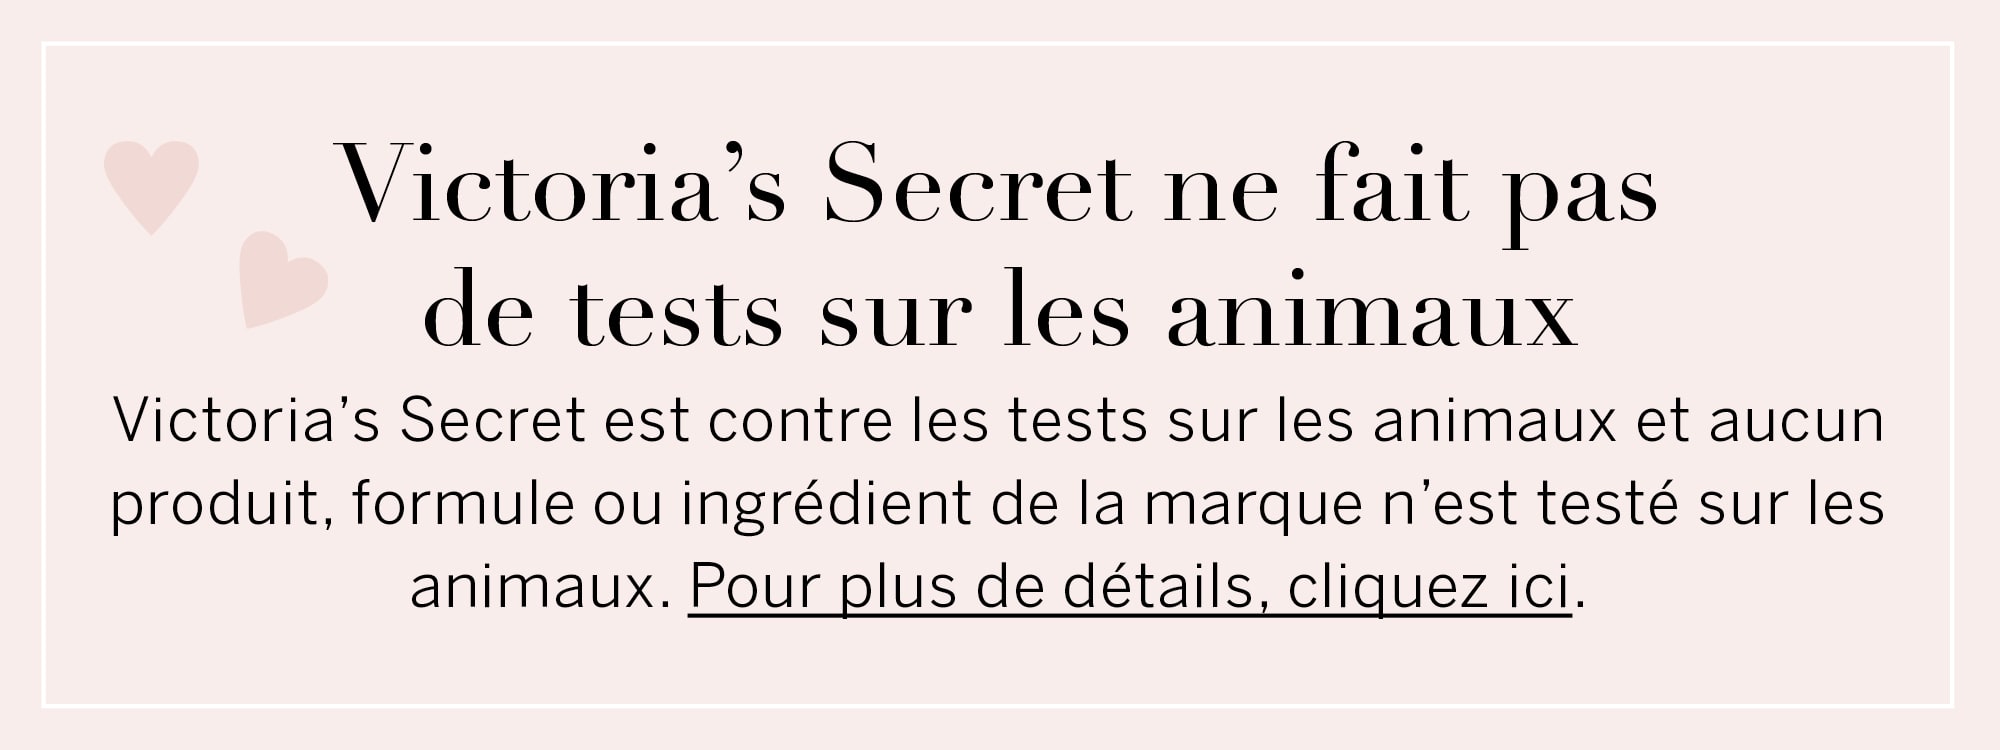 Victoria’s Secret ne fait pas de tests sur les animaux